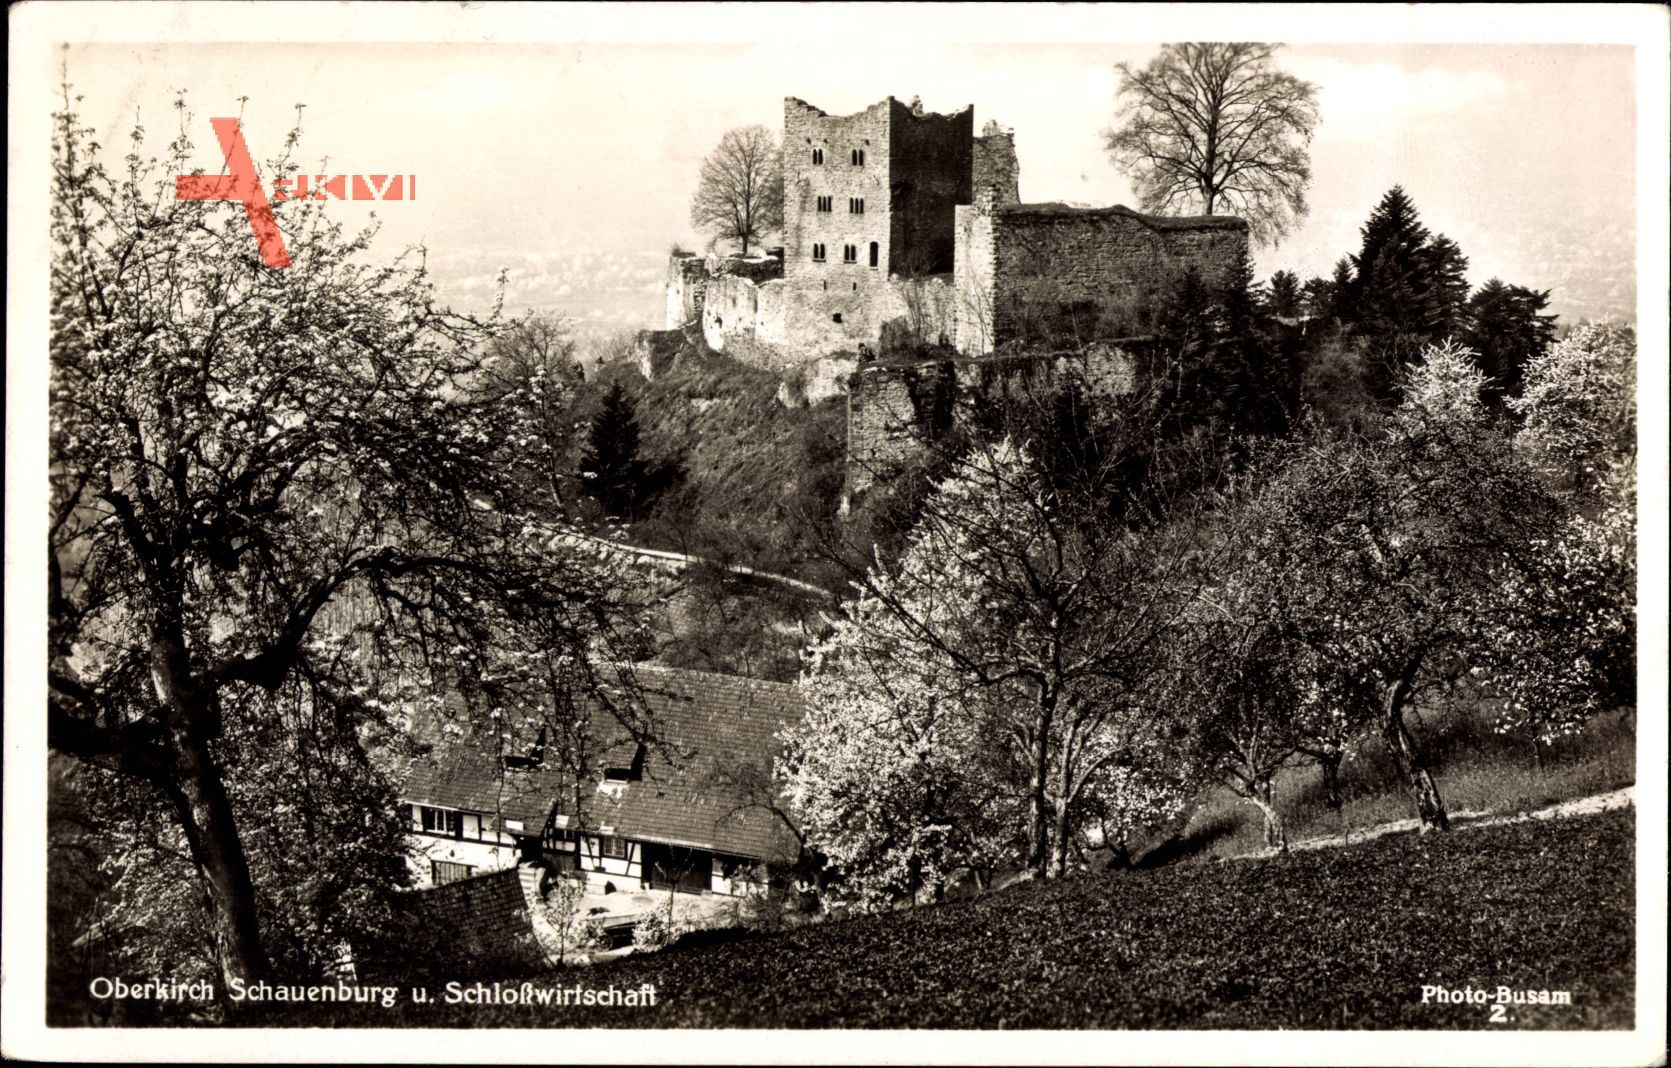 Oberkirch in Baden Württemberg, Schauenburg und Schlosswirtschaft